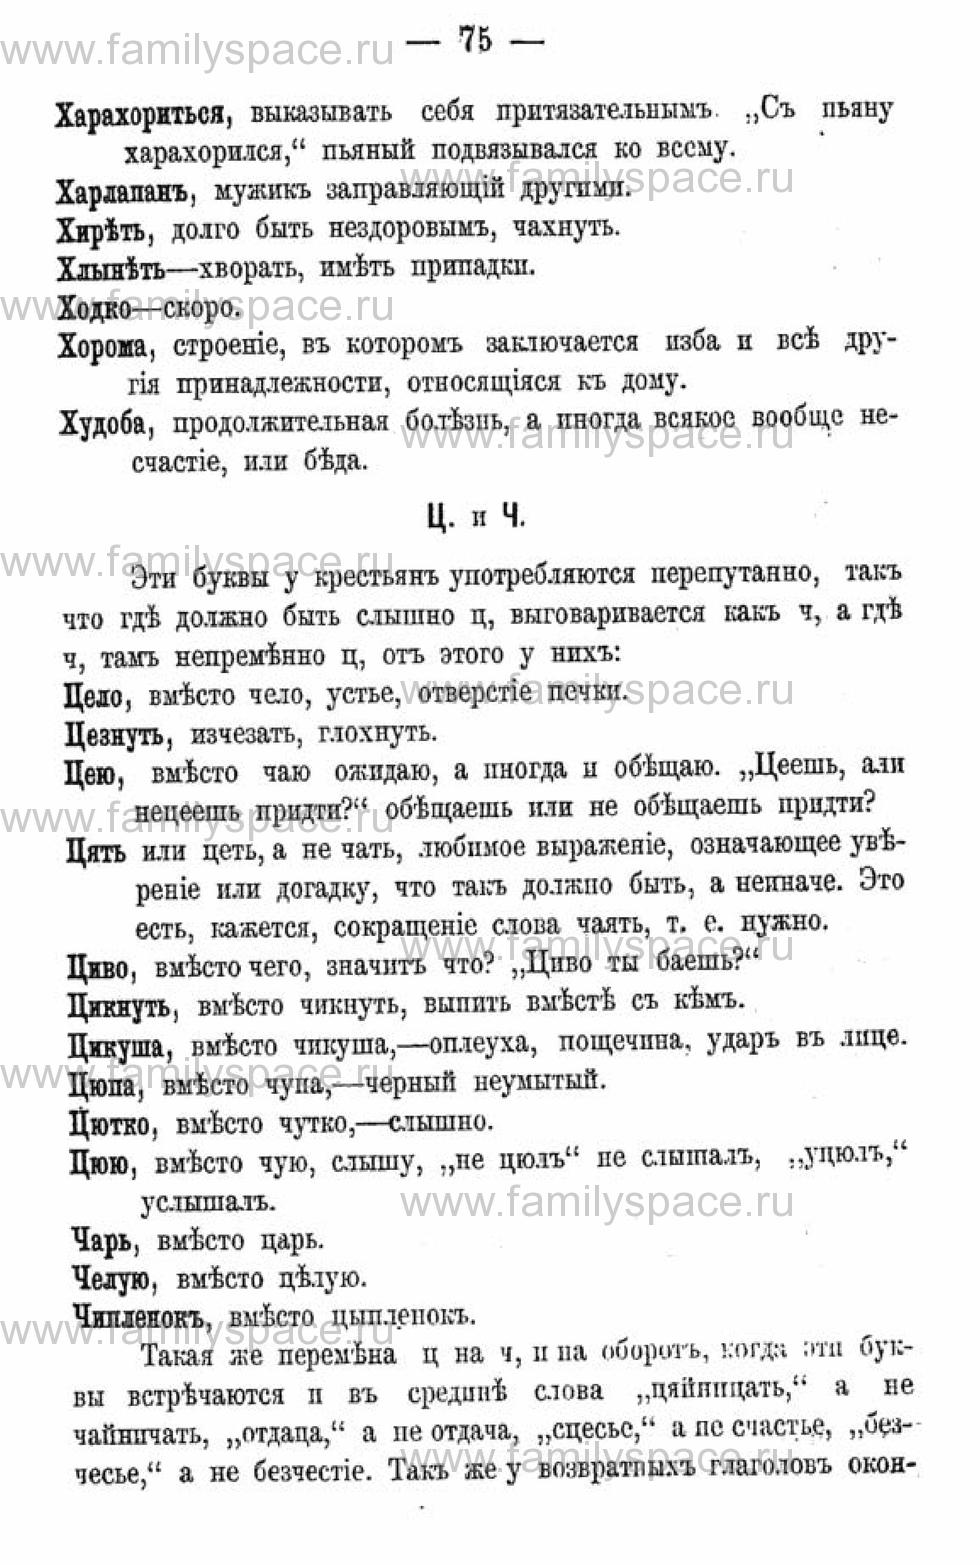 Поиск по фамилии - Календарь Вятской губернии - 1880, страница 2075